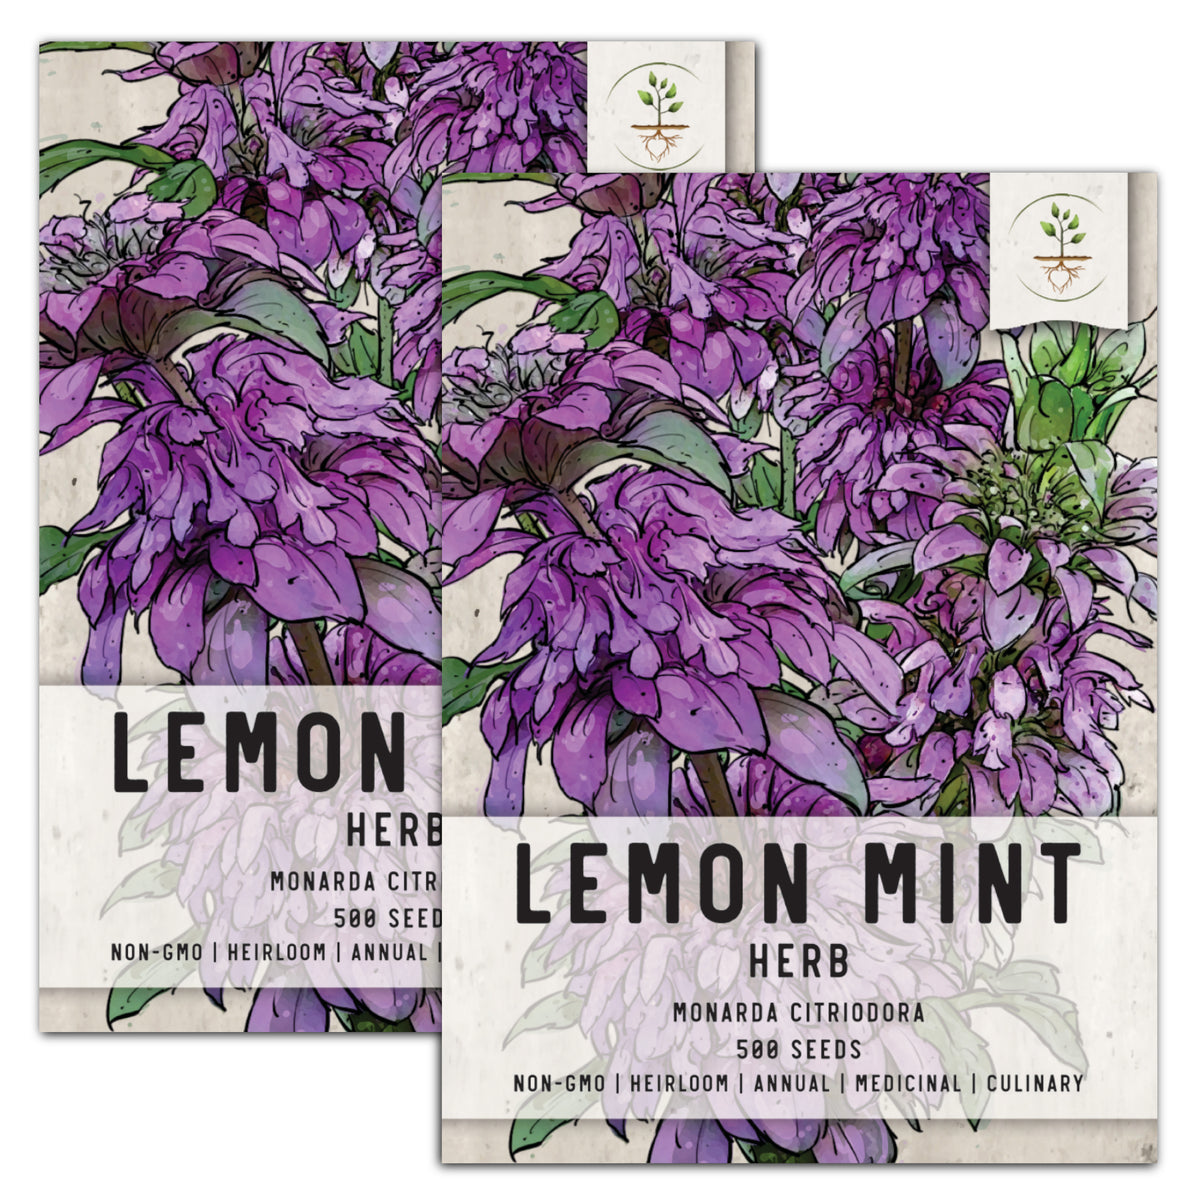 LEMON MINT - Johnston Seed Company